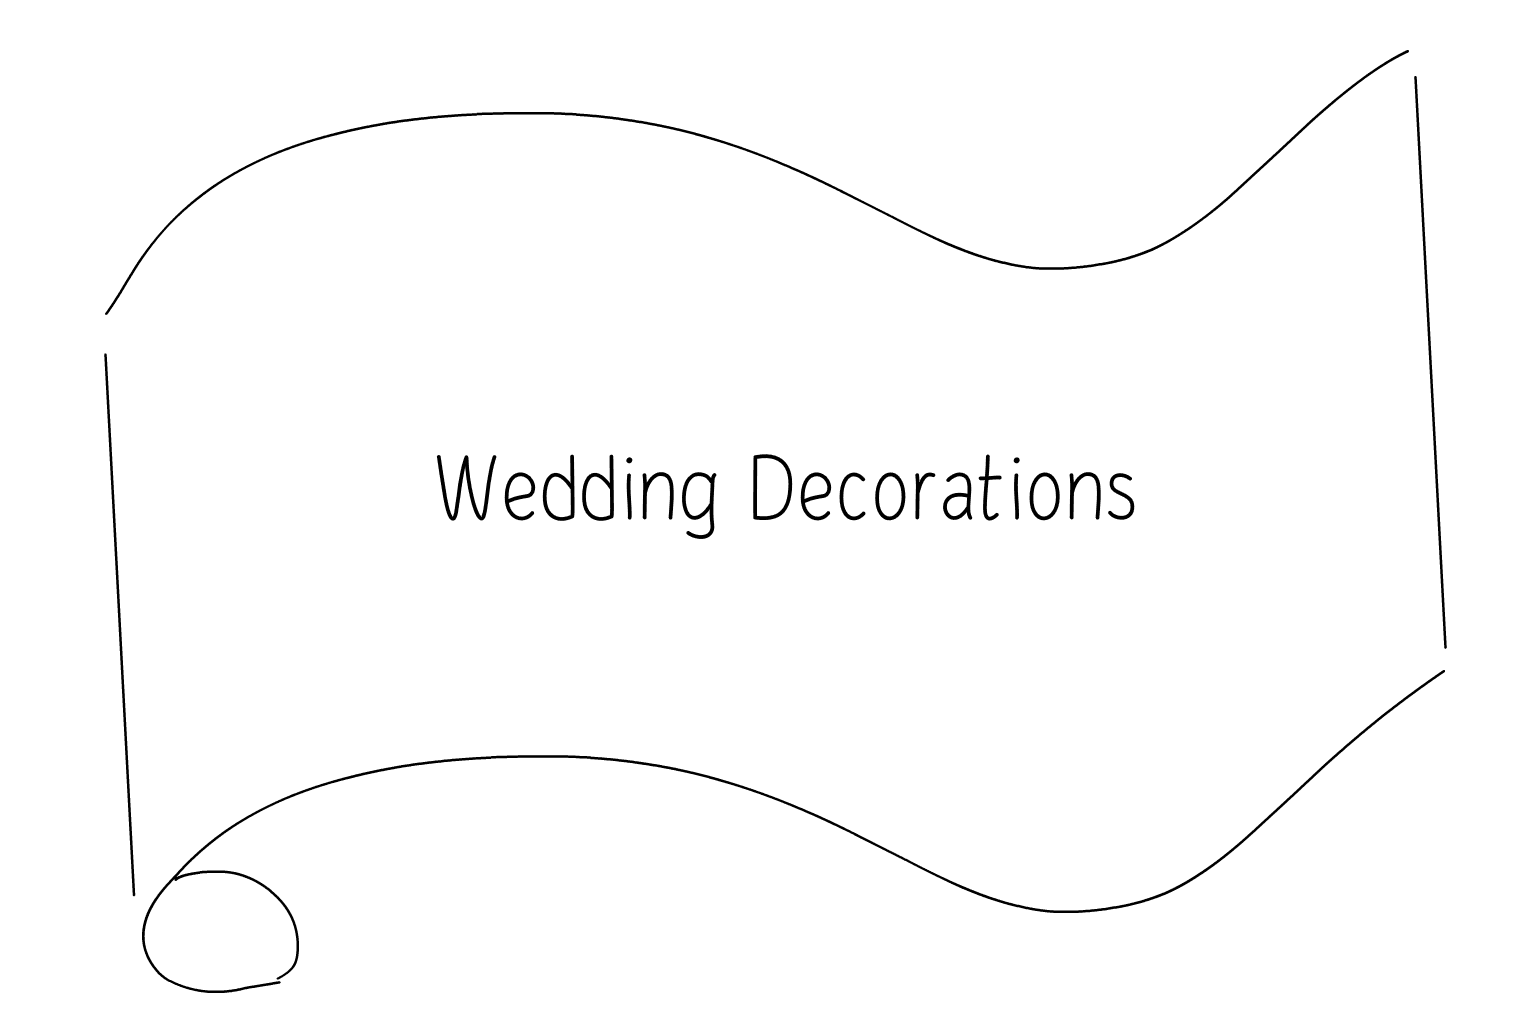 Иллюстрация Свадебные украшения и освещение